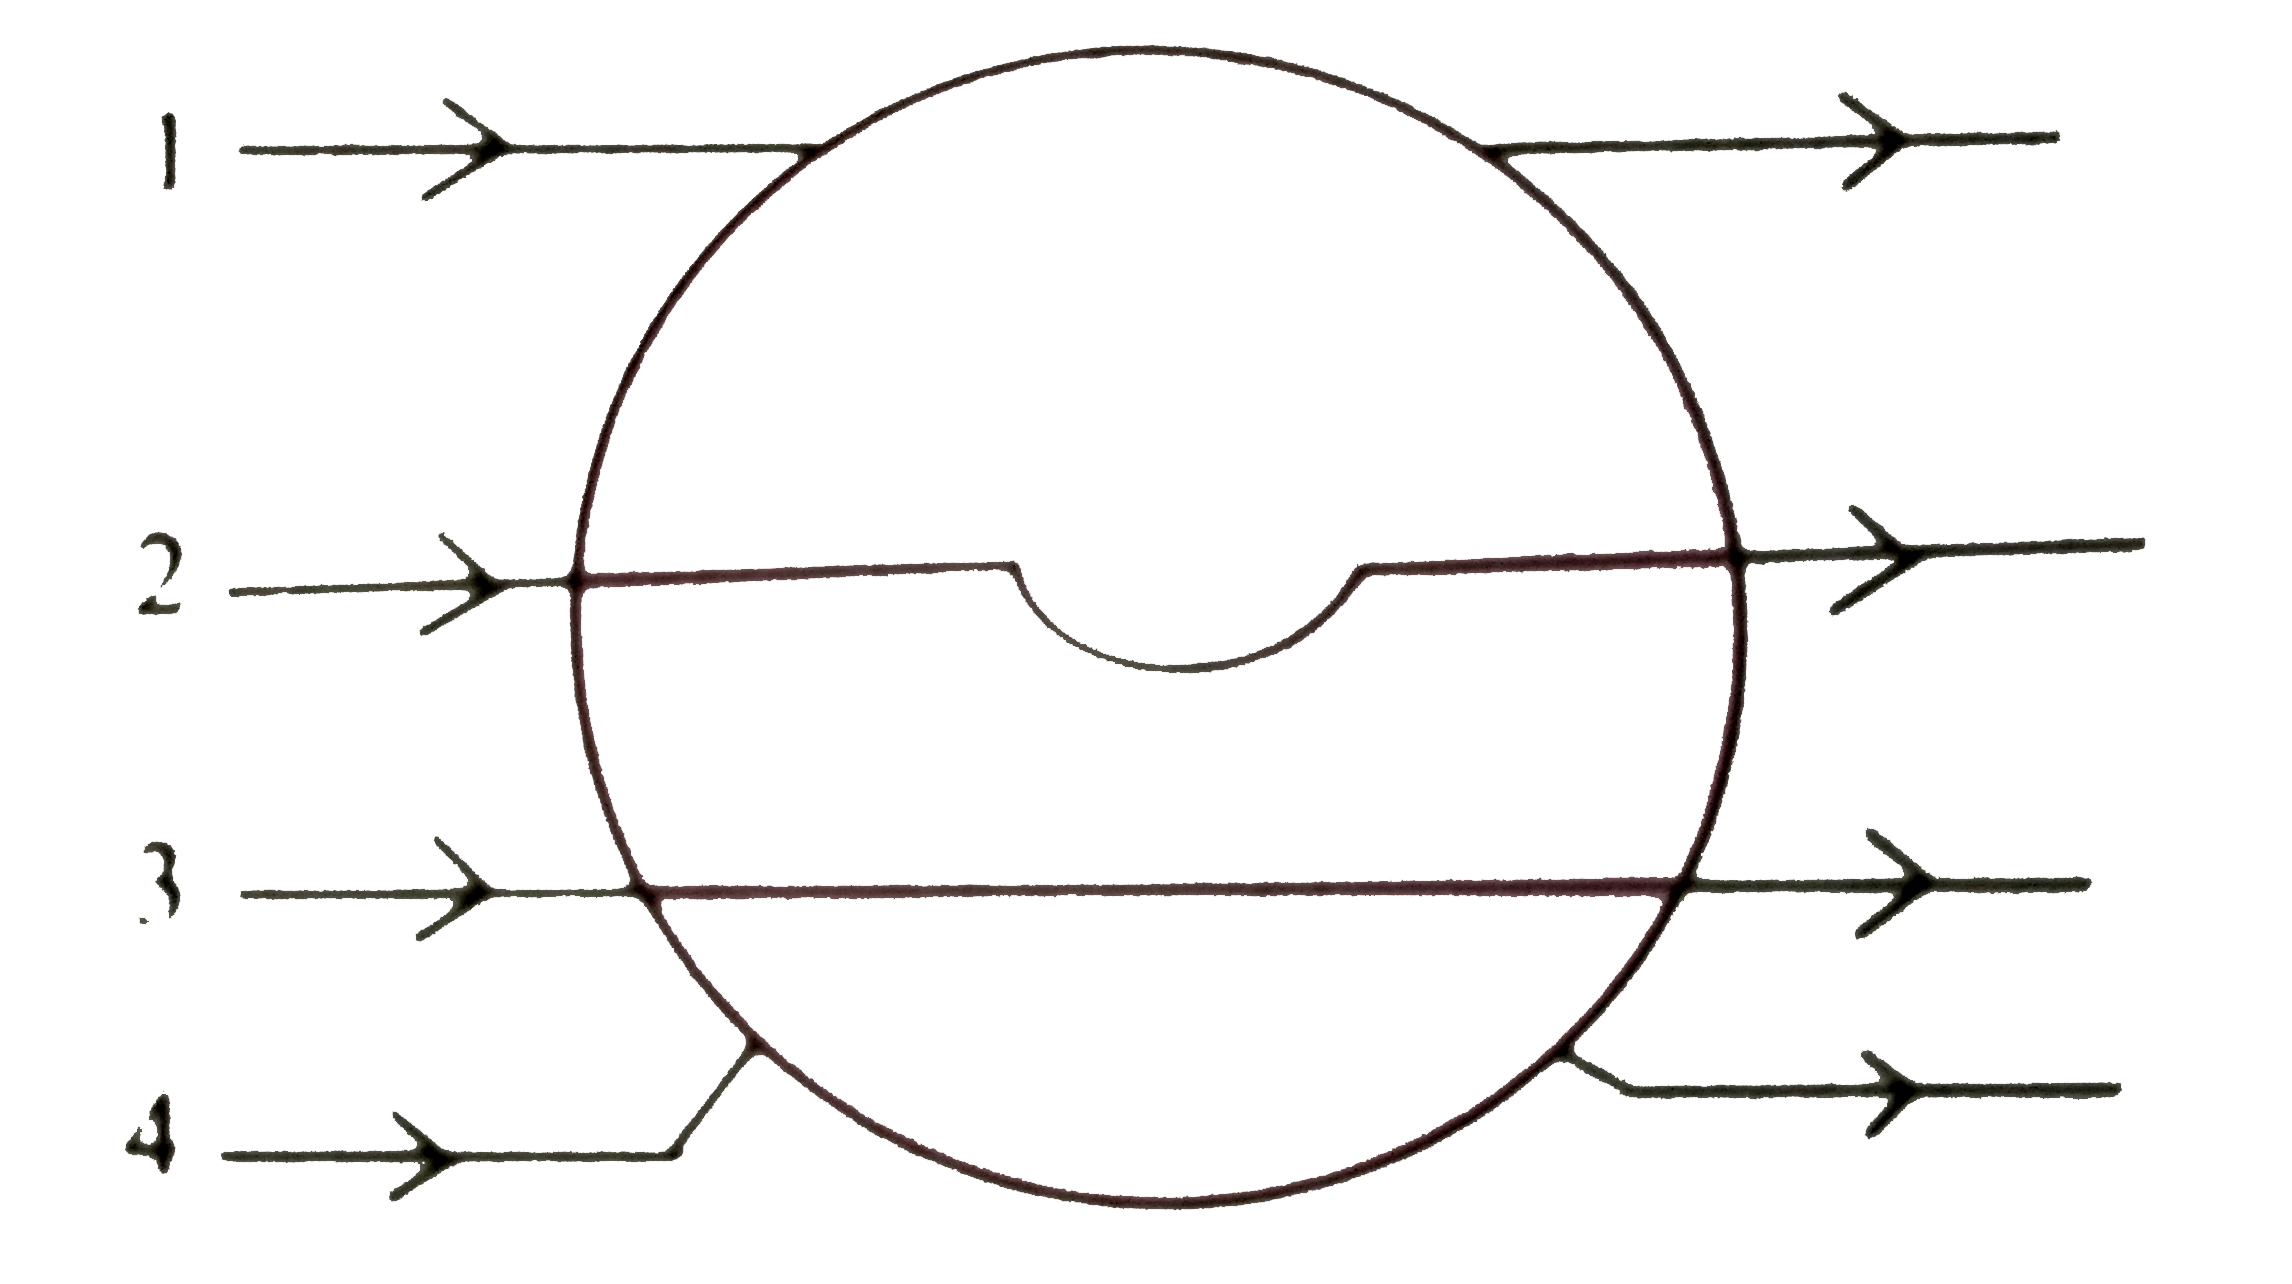 किसी धात्विक गोले के एकसमान विद्युत क्षेत्र में रखने पर निम्न चित्र में प्रदर्शित  क्षेत्र रेखाएं कौन से मार्ग के अनुसरण  करेगी ?